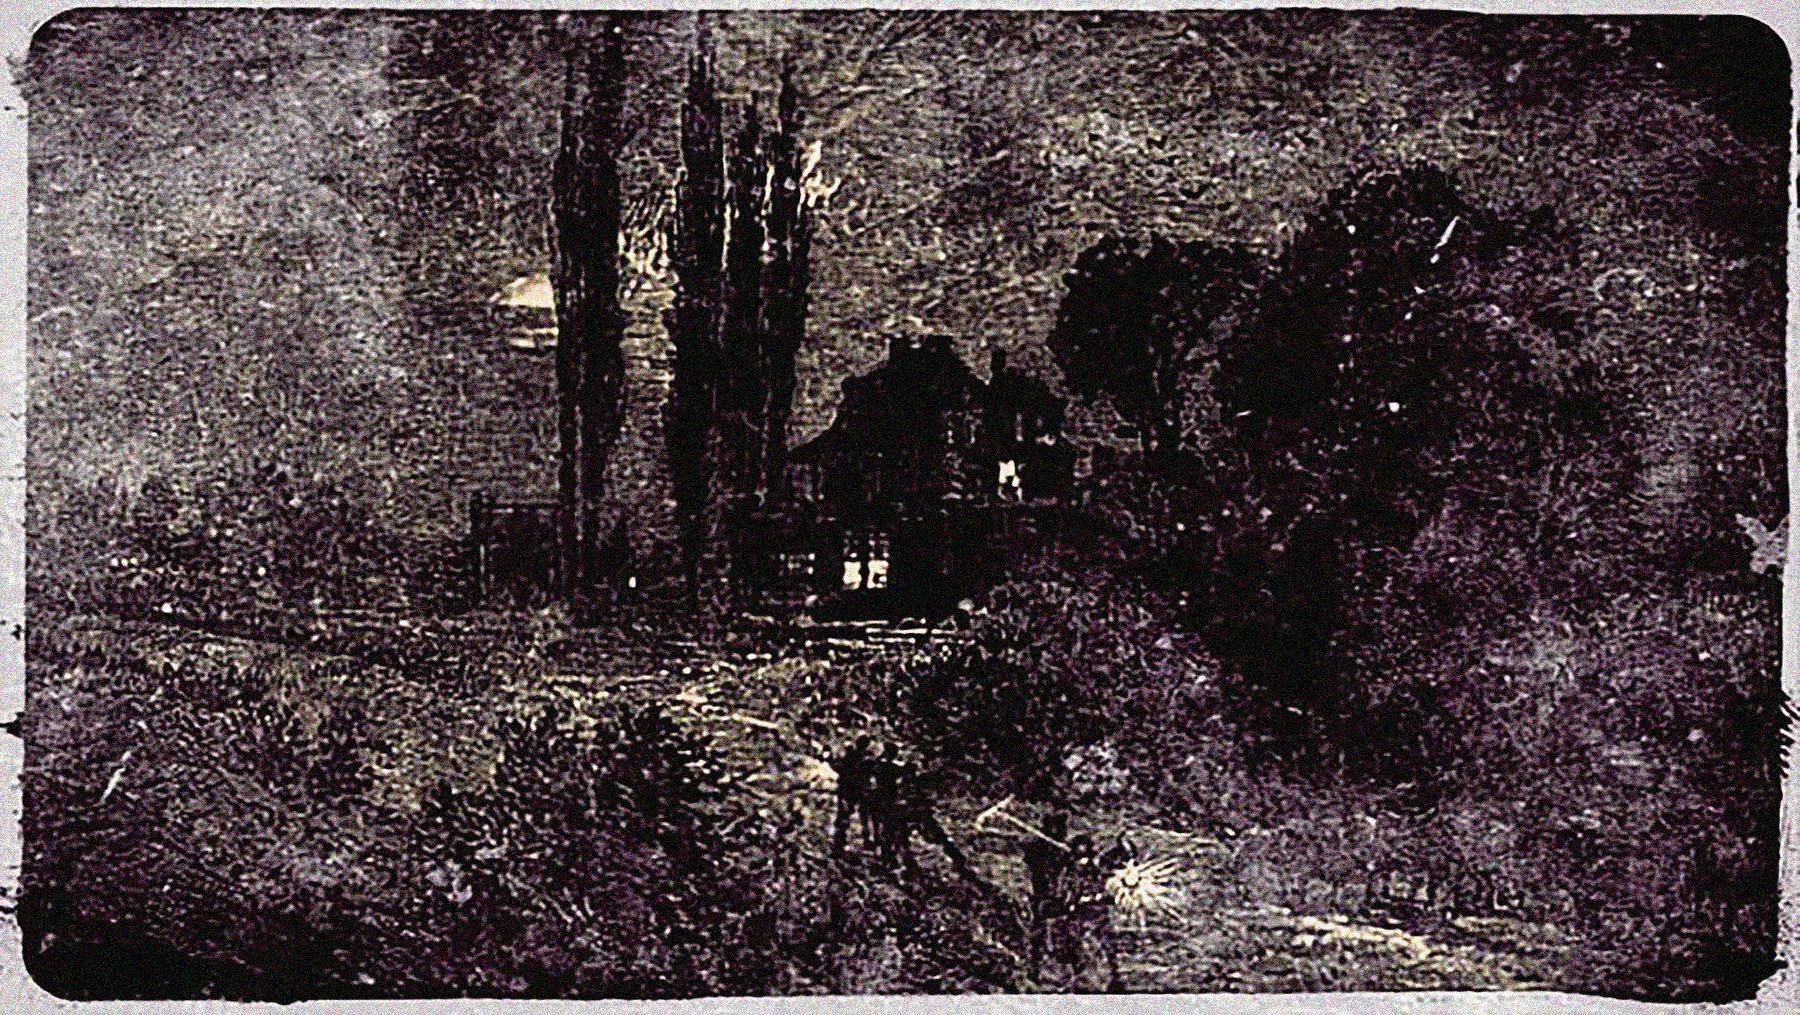 Dark Day (1780), Richard Devens, 1878